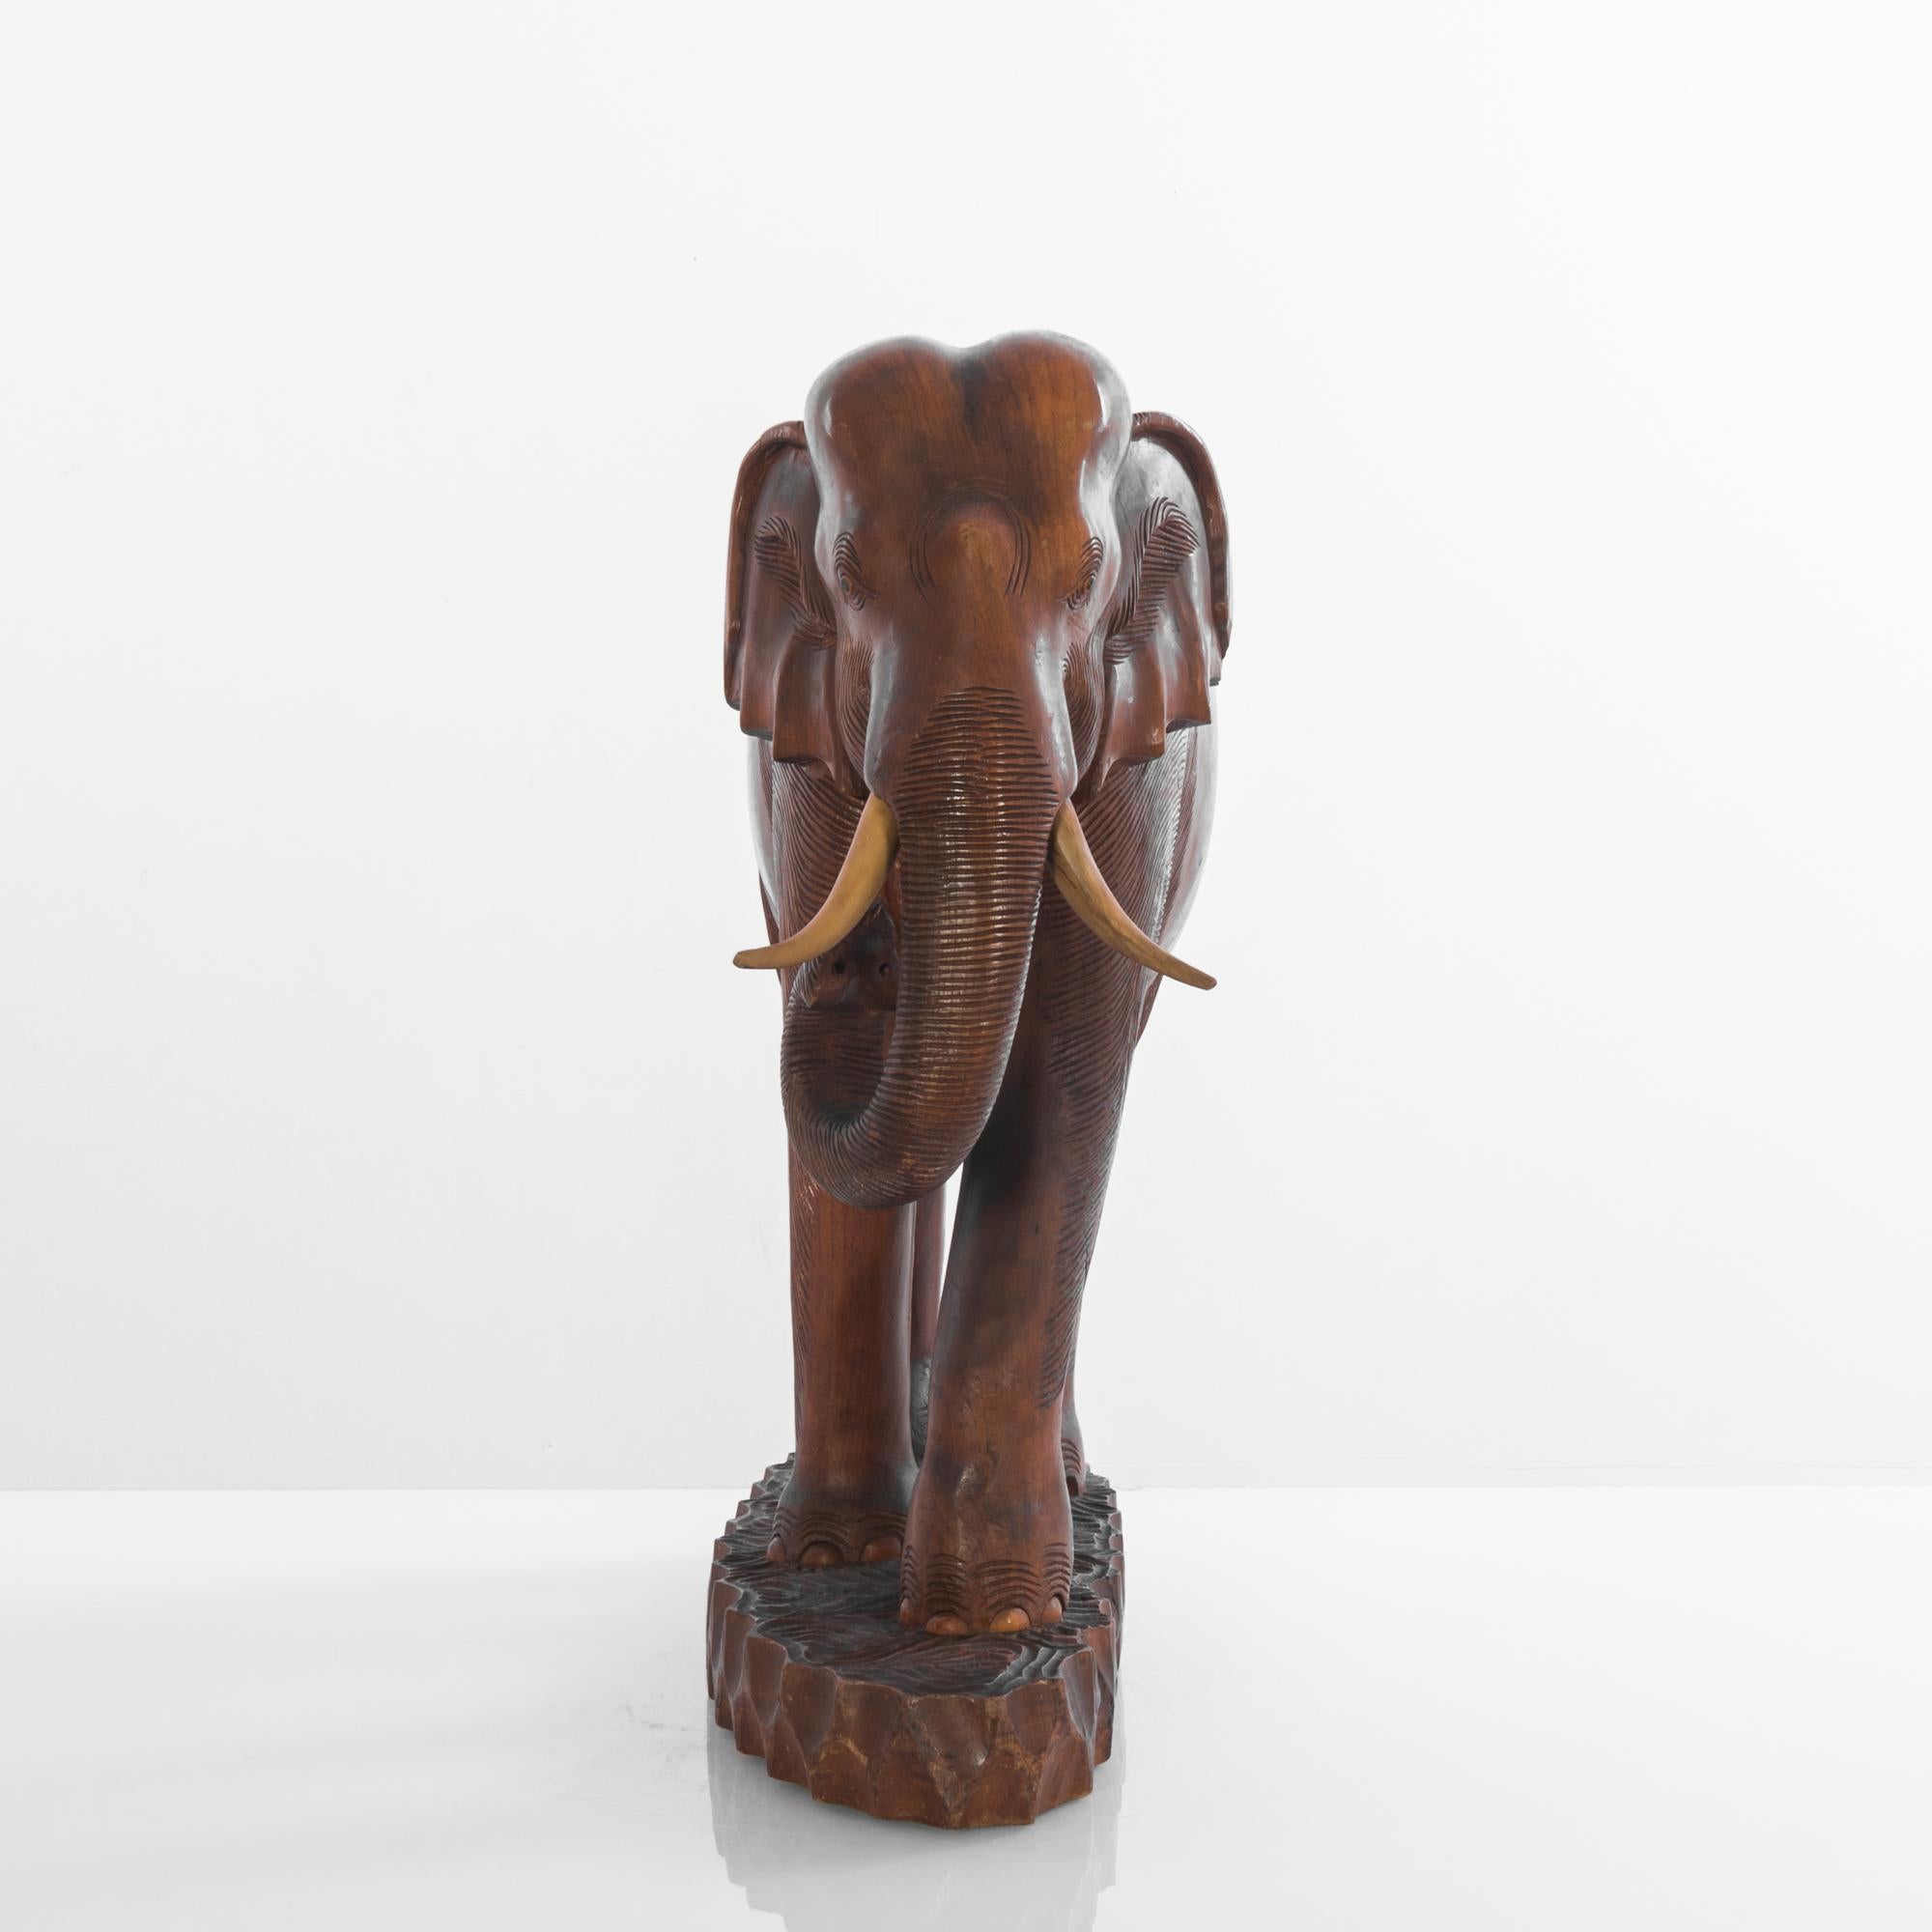 Cet éléphant africain en bois des années 1950 est une représentation exquise de l'artisanat traditionnel. La figure, sculptée avec une attention méticuleuse aux détails, présente une patine riche et chaude que seul le temps peut conférer. Ses